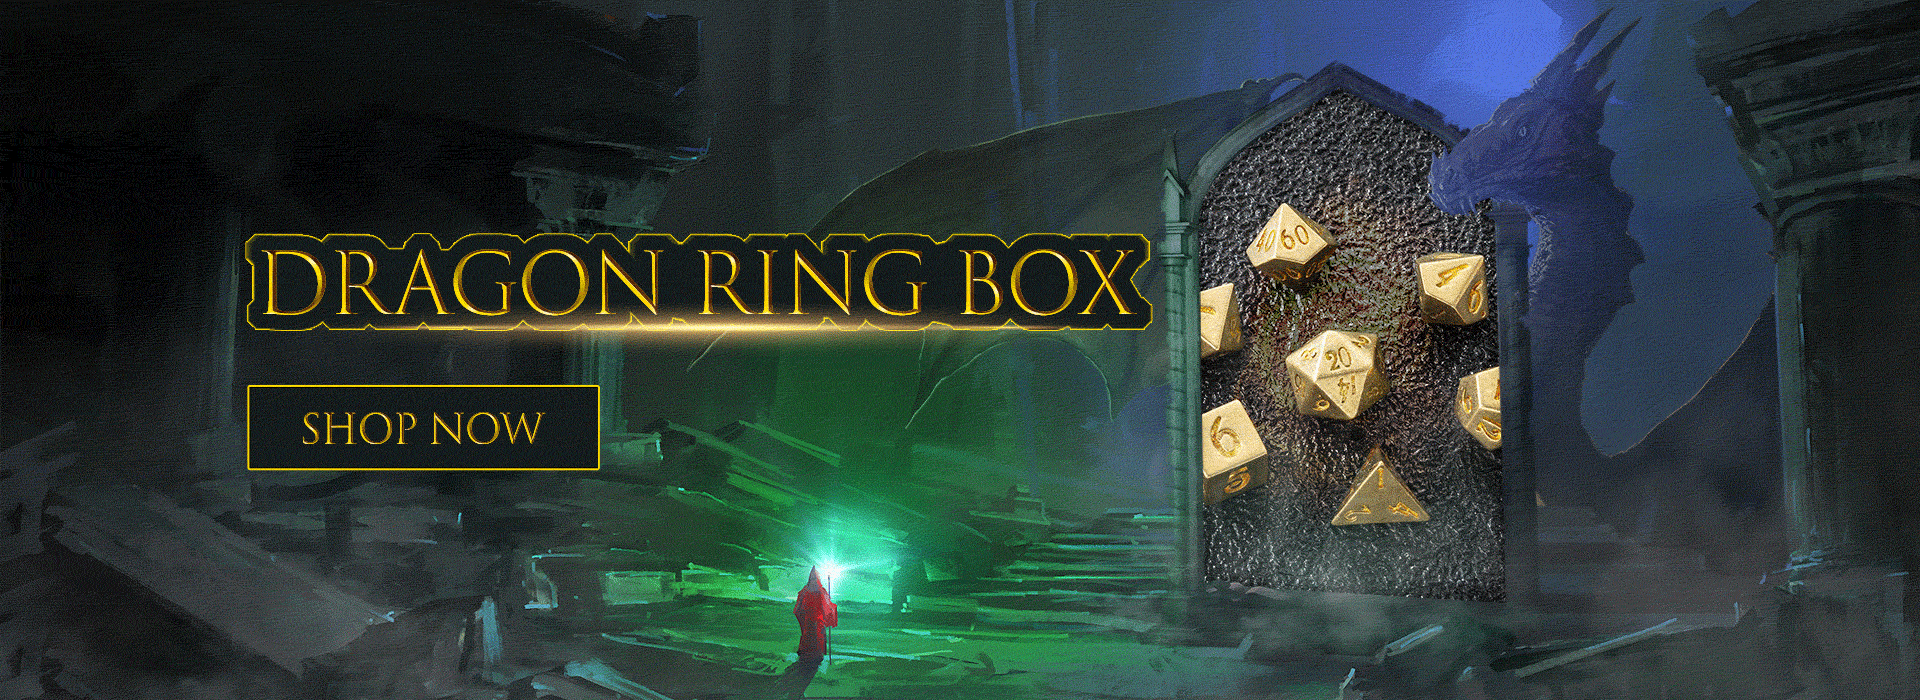 DRAGON RING BOX 